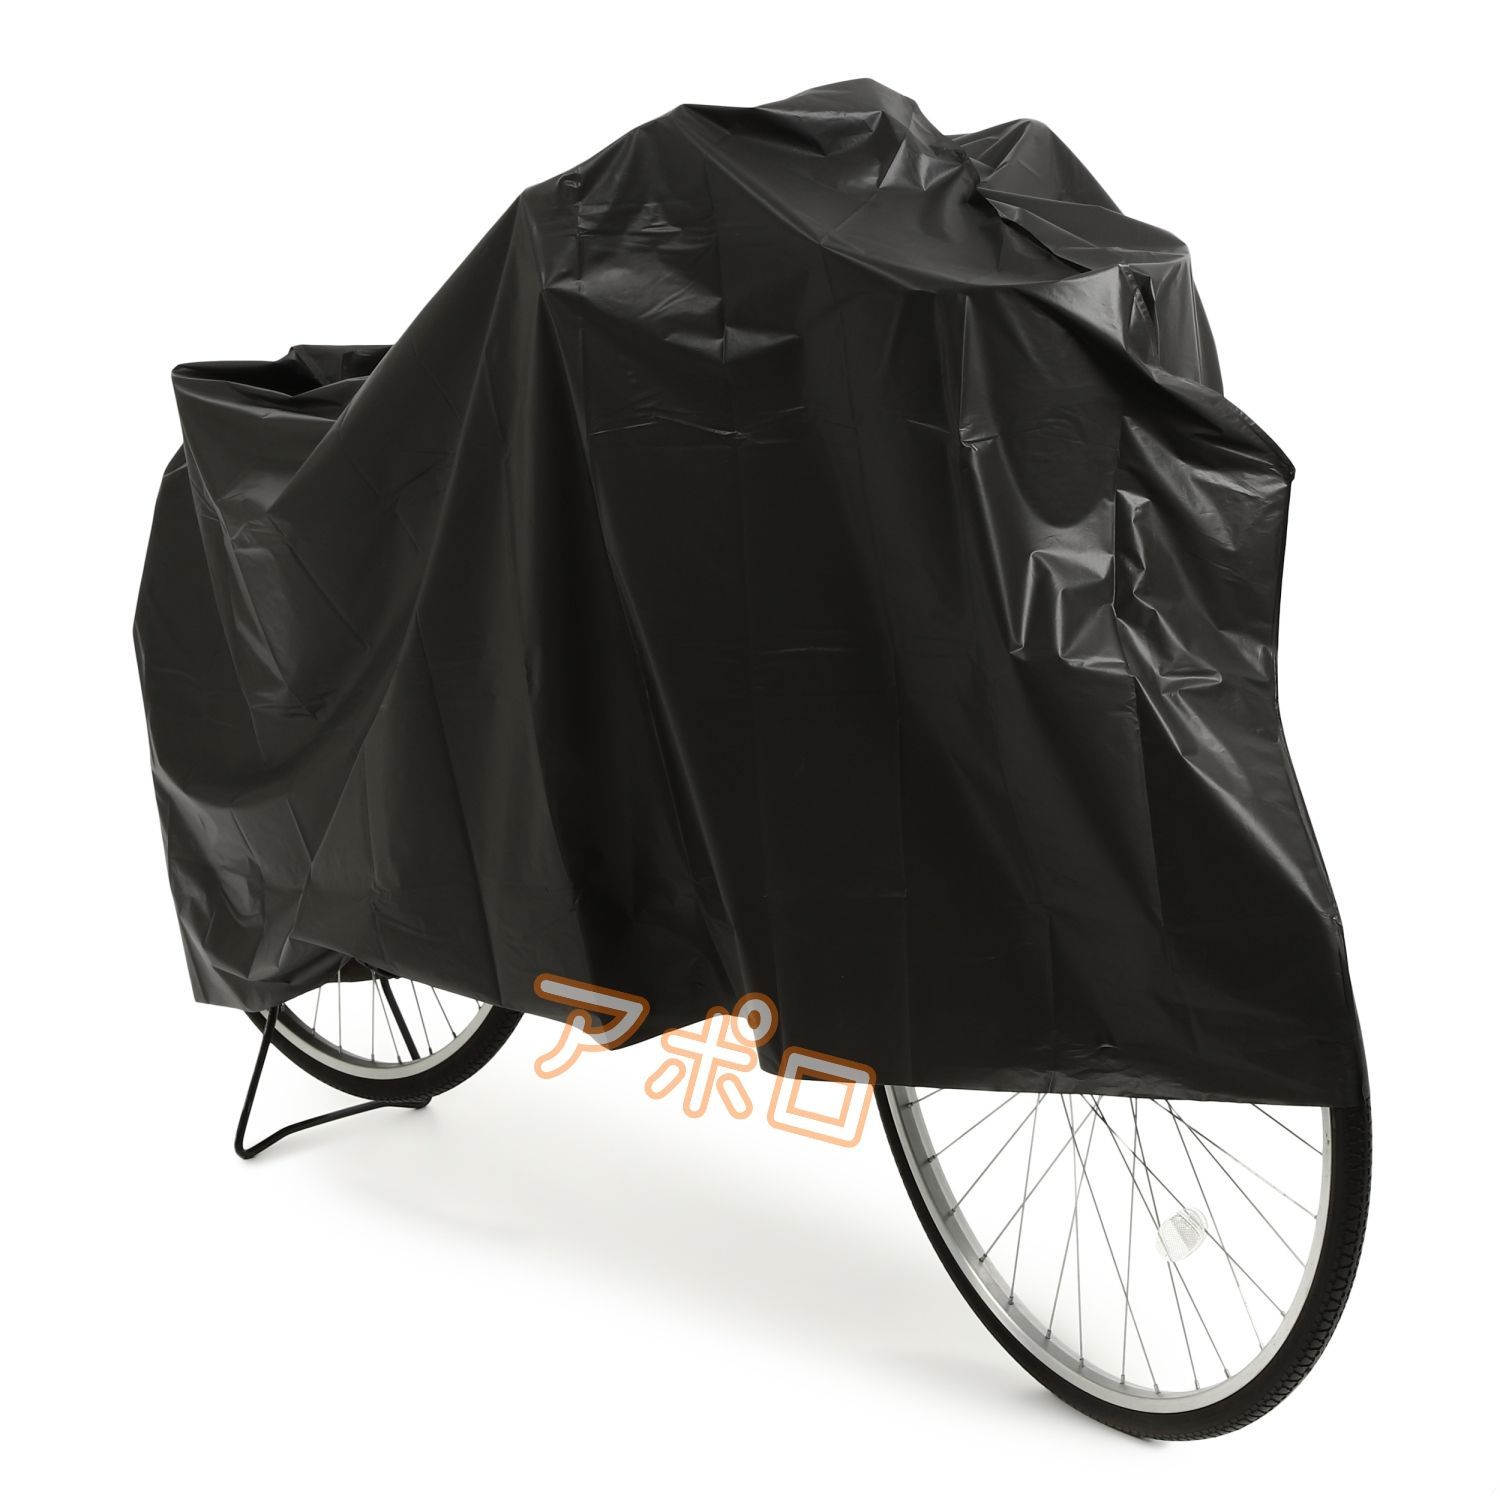 メルカリShops - 黒 自転車カバー ブラック 黒色 即購入歓迎 話題沸騰 人気商品 新品未使用